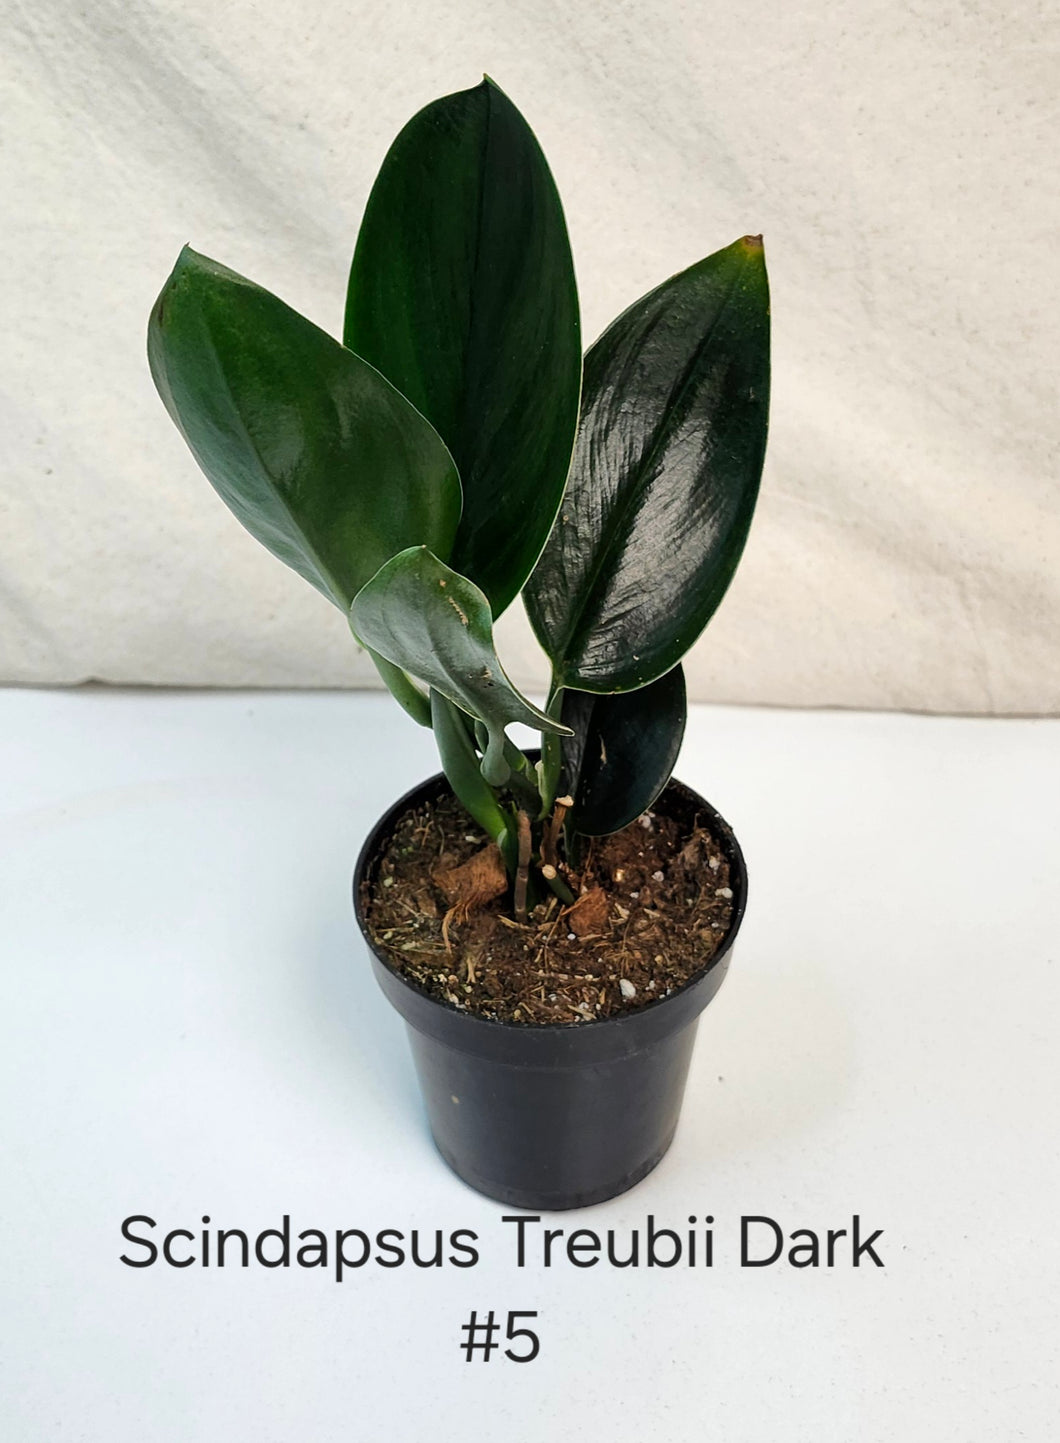 Scindapsus Treubii Dark Form #5